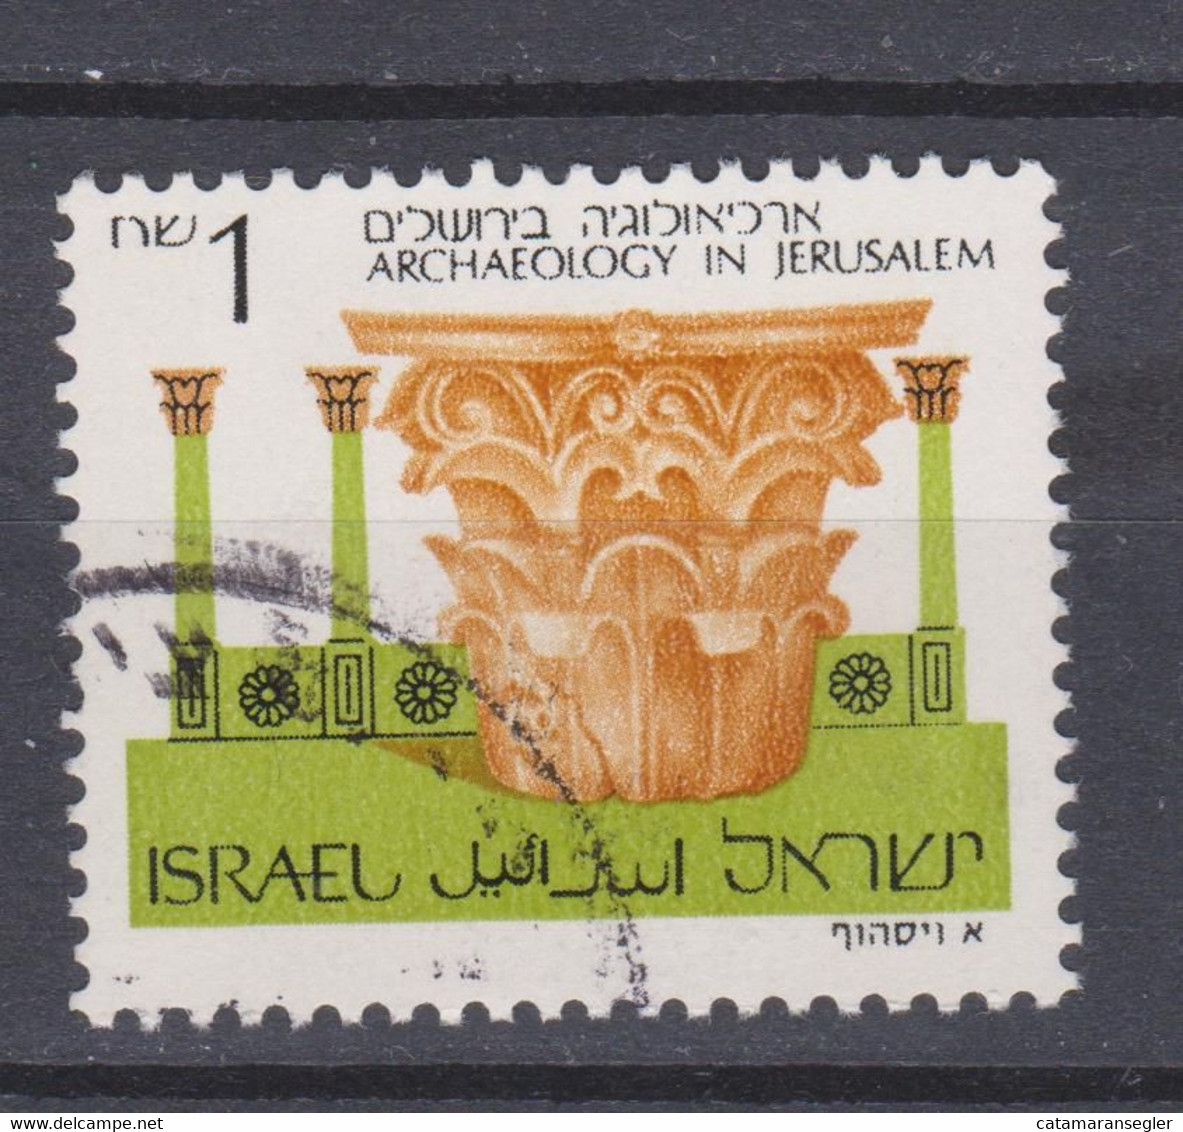 Israel 1988  Nr 1024 Archeology, Bale 921-II, Printing Varieties  2 Ph Fine Canceled - RARE - - Gebruikt (met Tabs)